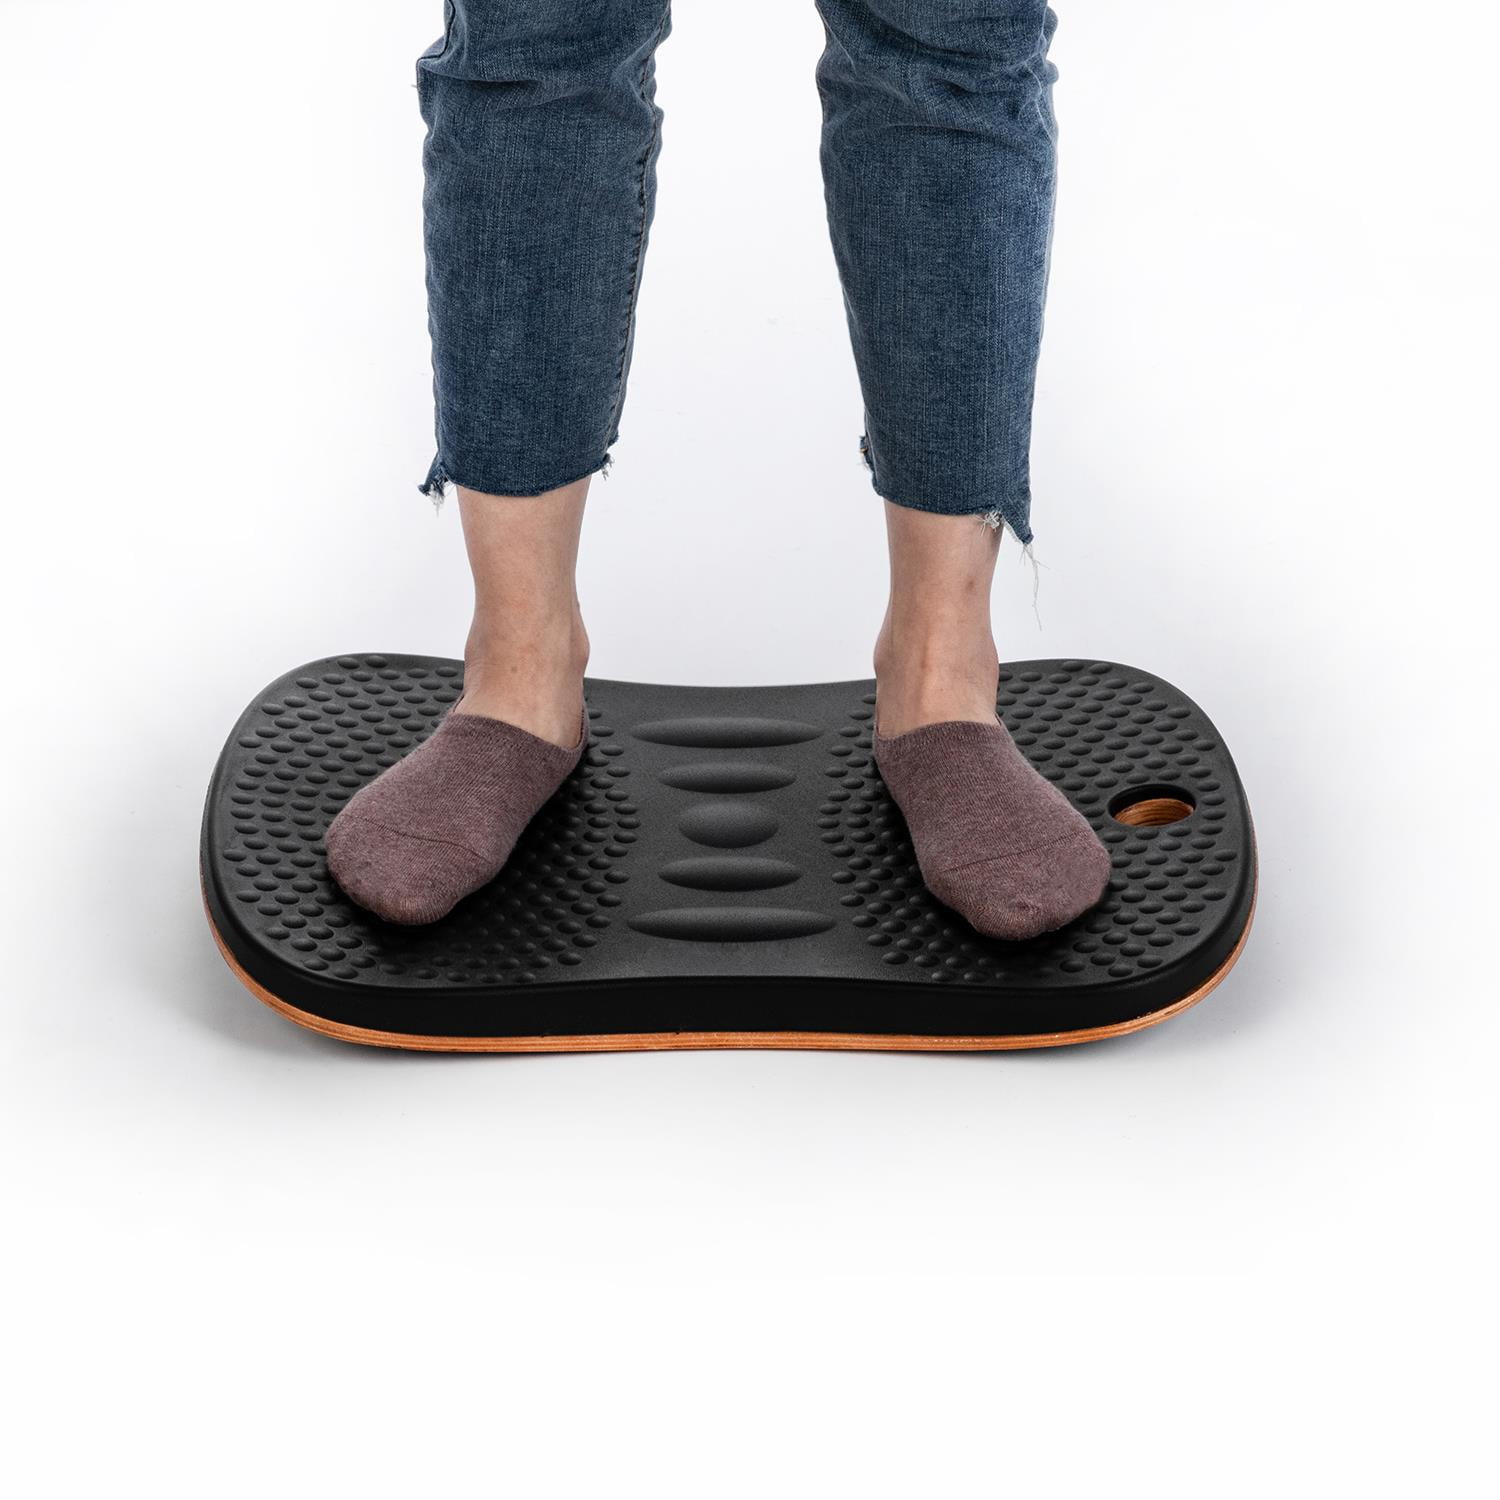 Zimtown Balance Board Standing Mat Standing Desk Mat Office Accessory - Foot  Rocker Leg Exerciser 